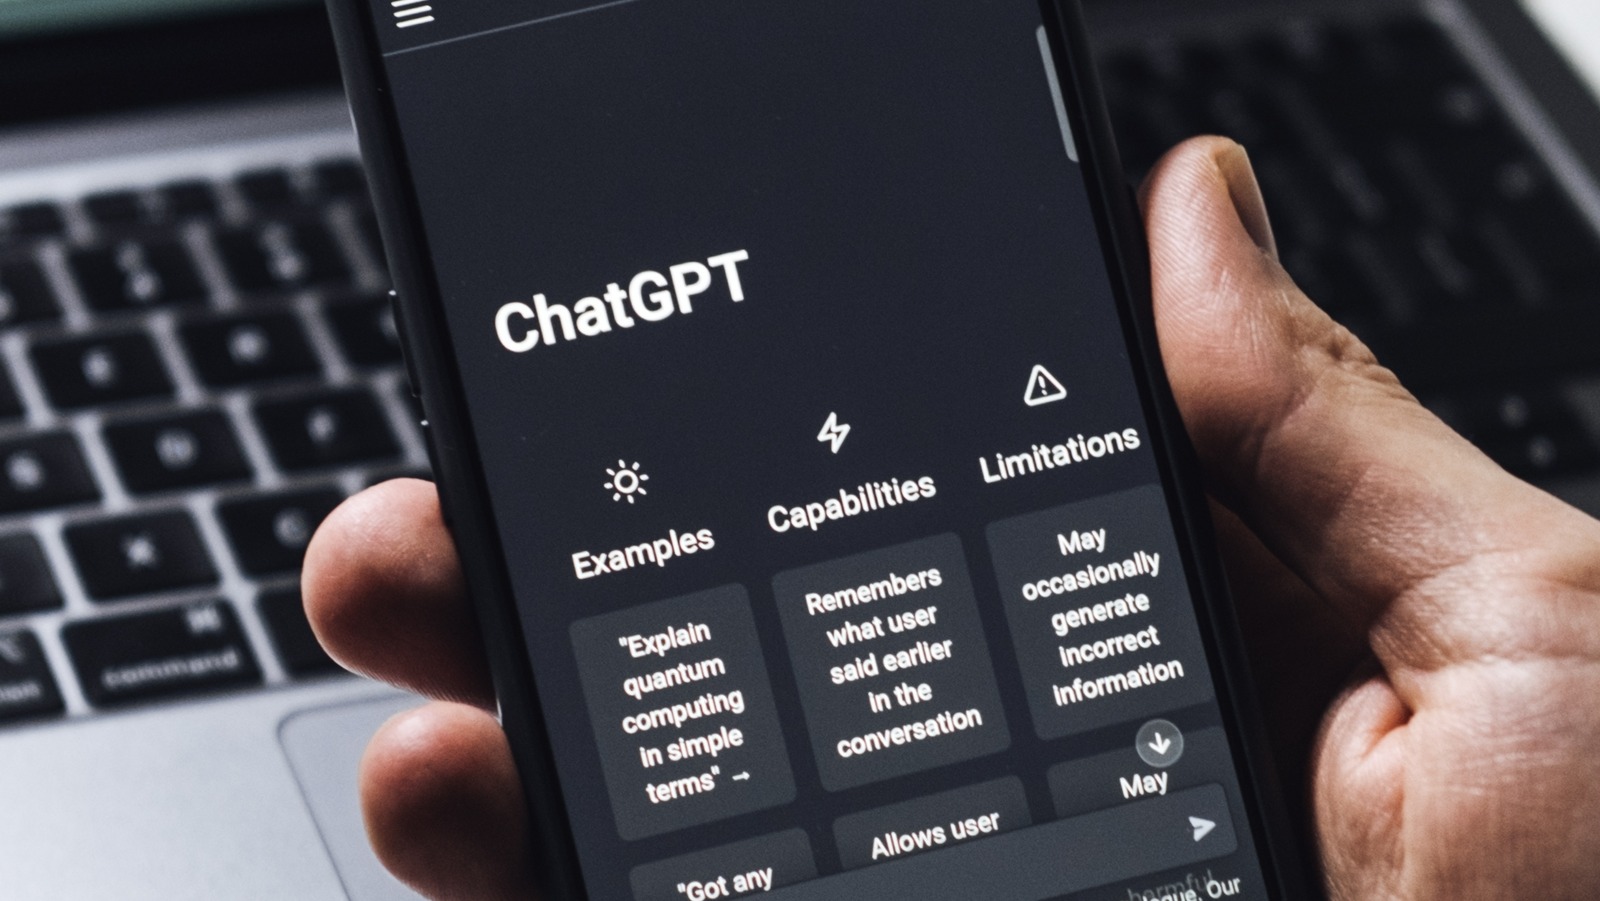 Veja profissões em alta para trabalhar com o ChatGPT